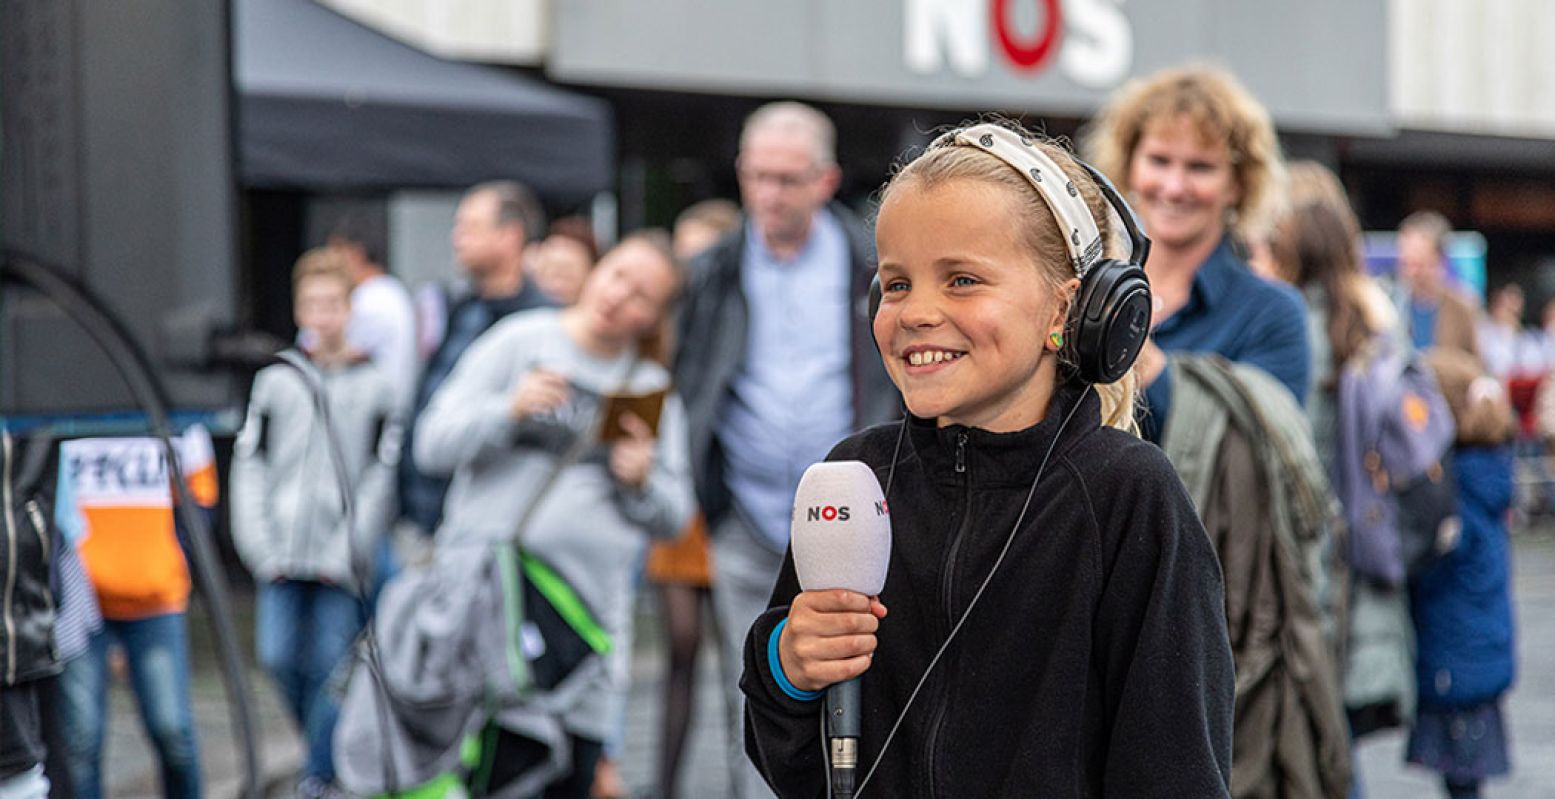 Leer presenteren op het NOS Journaalplein. Foto: Dutch Media Week